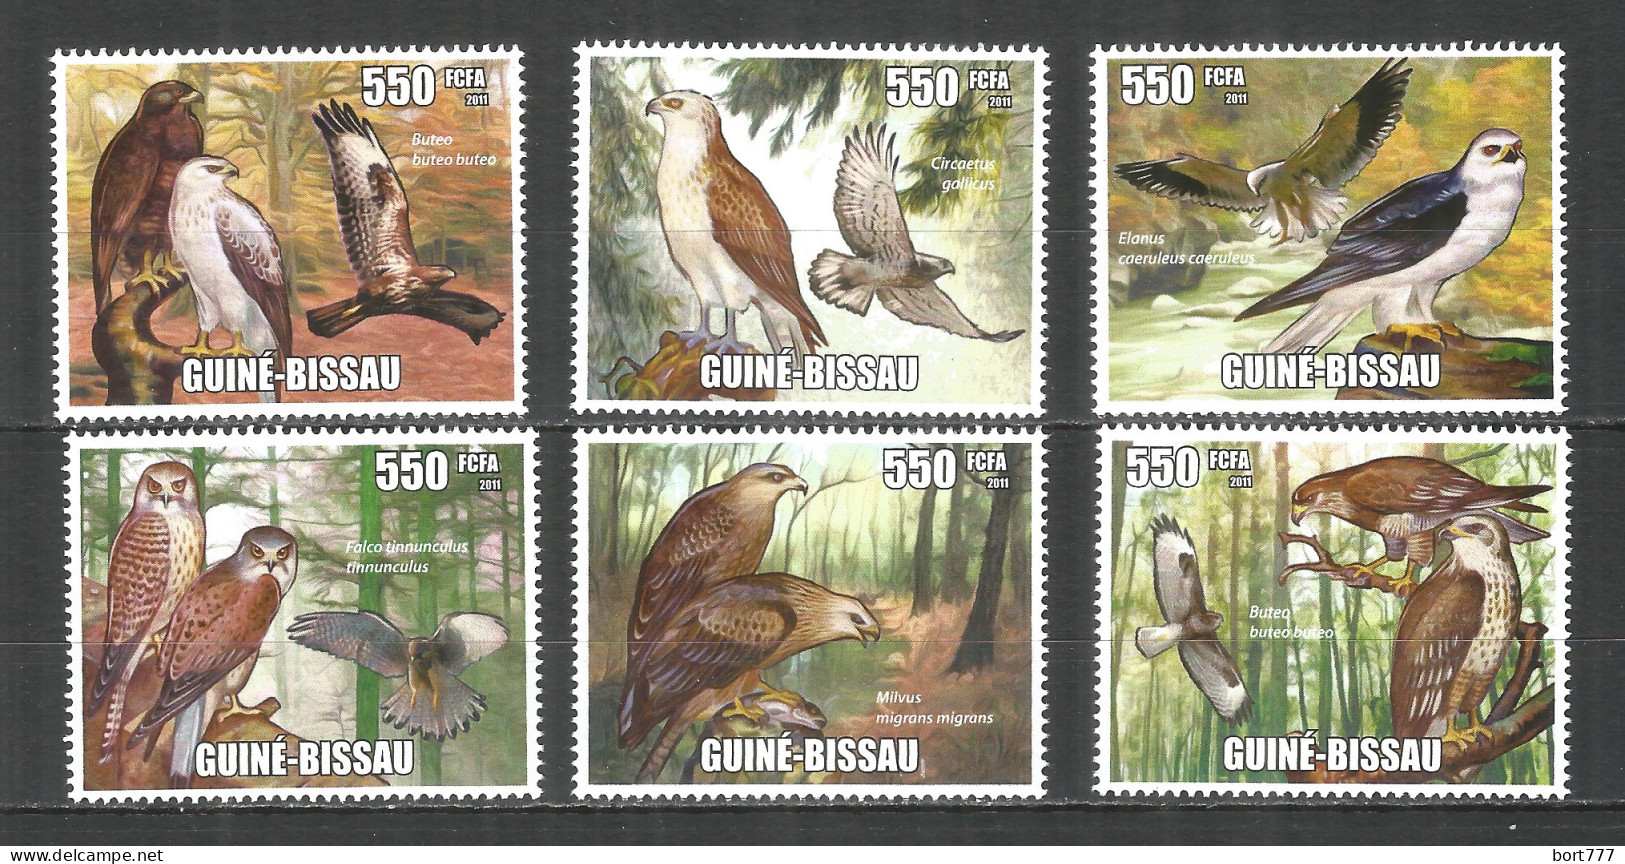 Guinea-Bissau 2011 Mint Stamps MNH(**) Raptors (Birds) - Guinée-Bissau